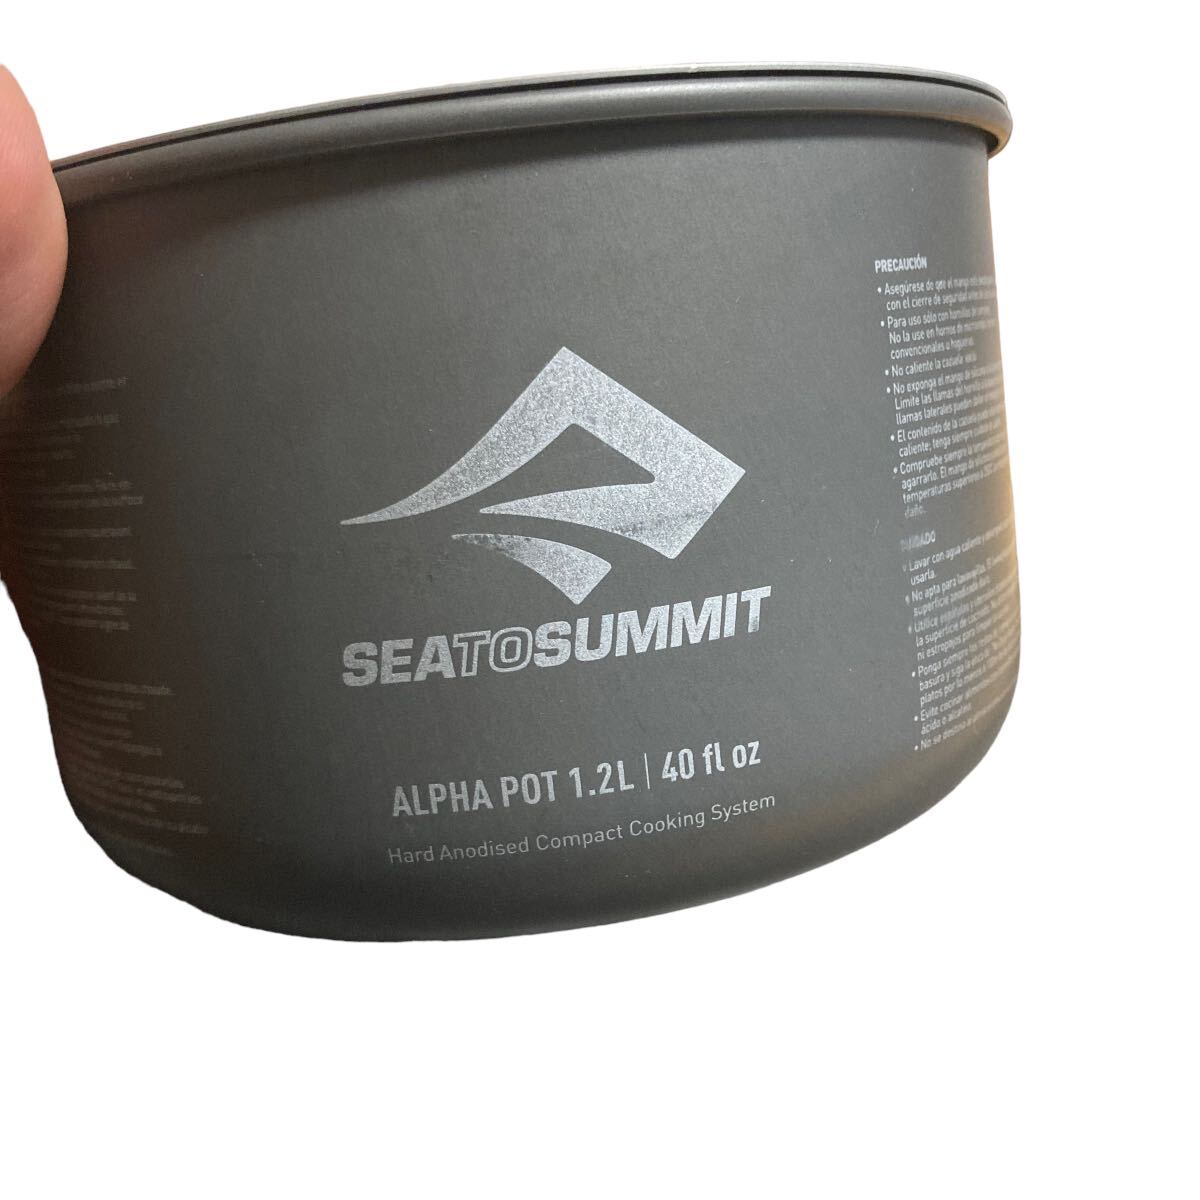 SEA TO SUMMIT Alpha pot 1.2Lsi- палец на ноге summit кухонная утварь треккинг альпинизм кухонная утварь 